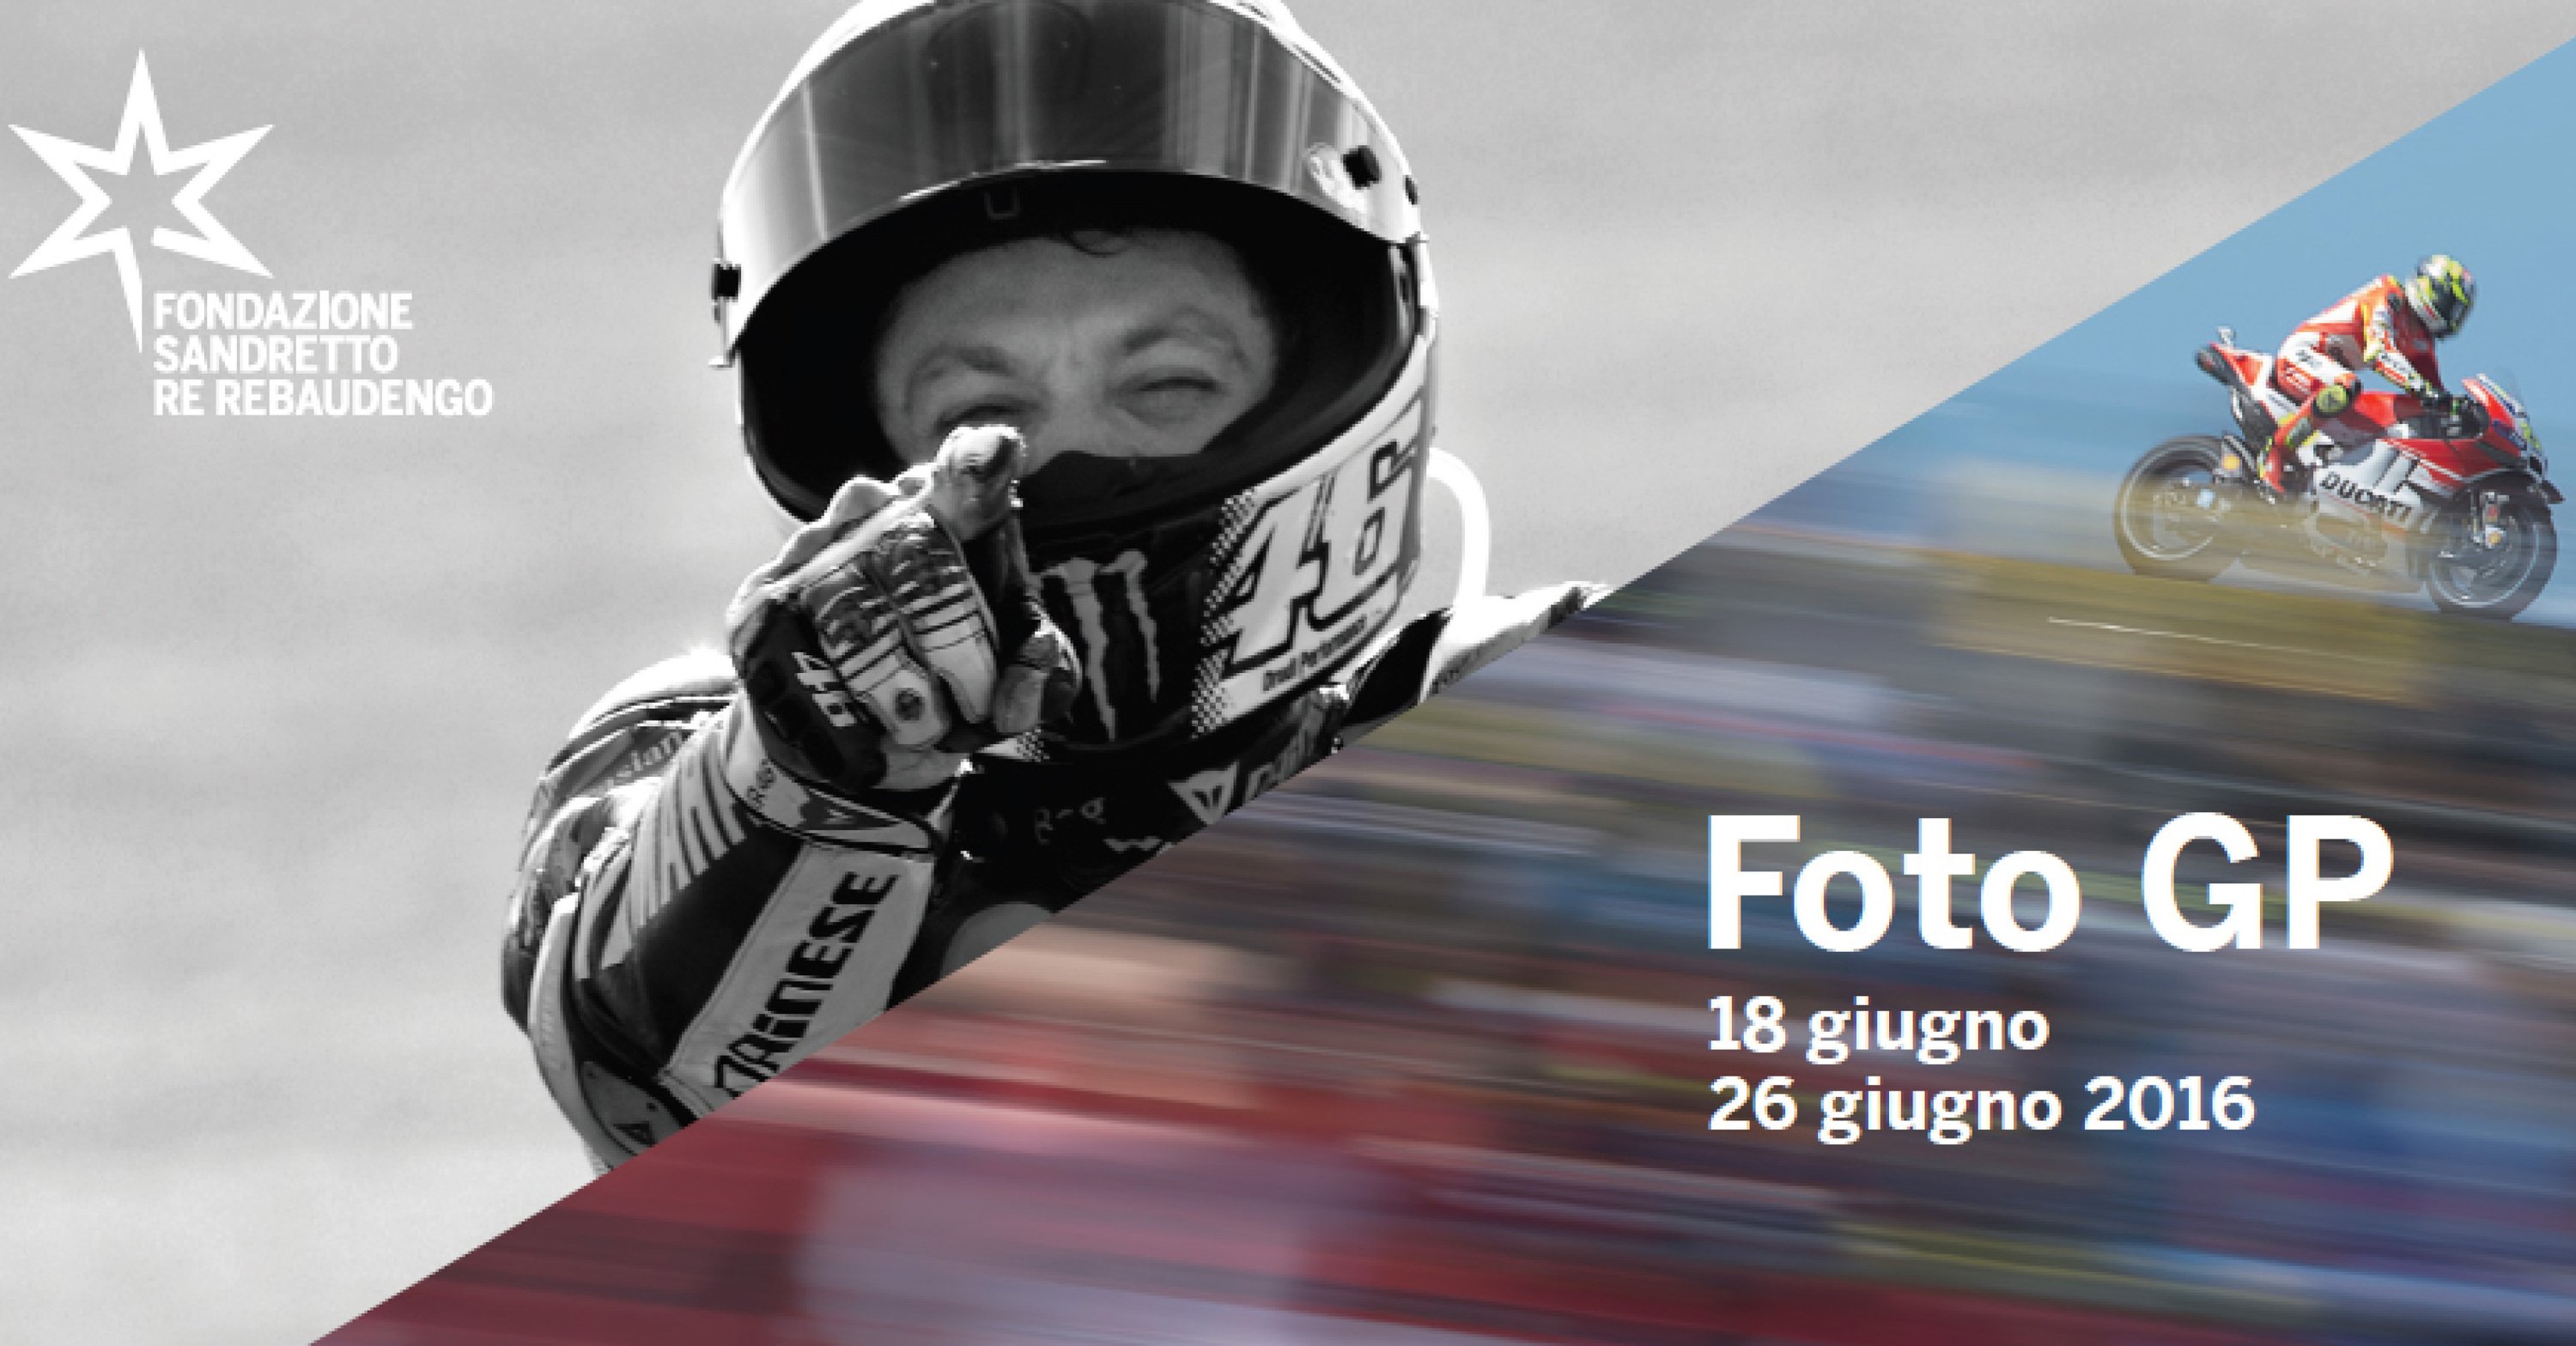 FotoGP, gli scatti pi&ugrave; belli della MotoGP in mostra a Torino